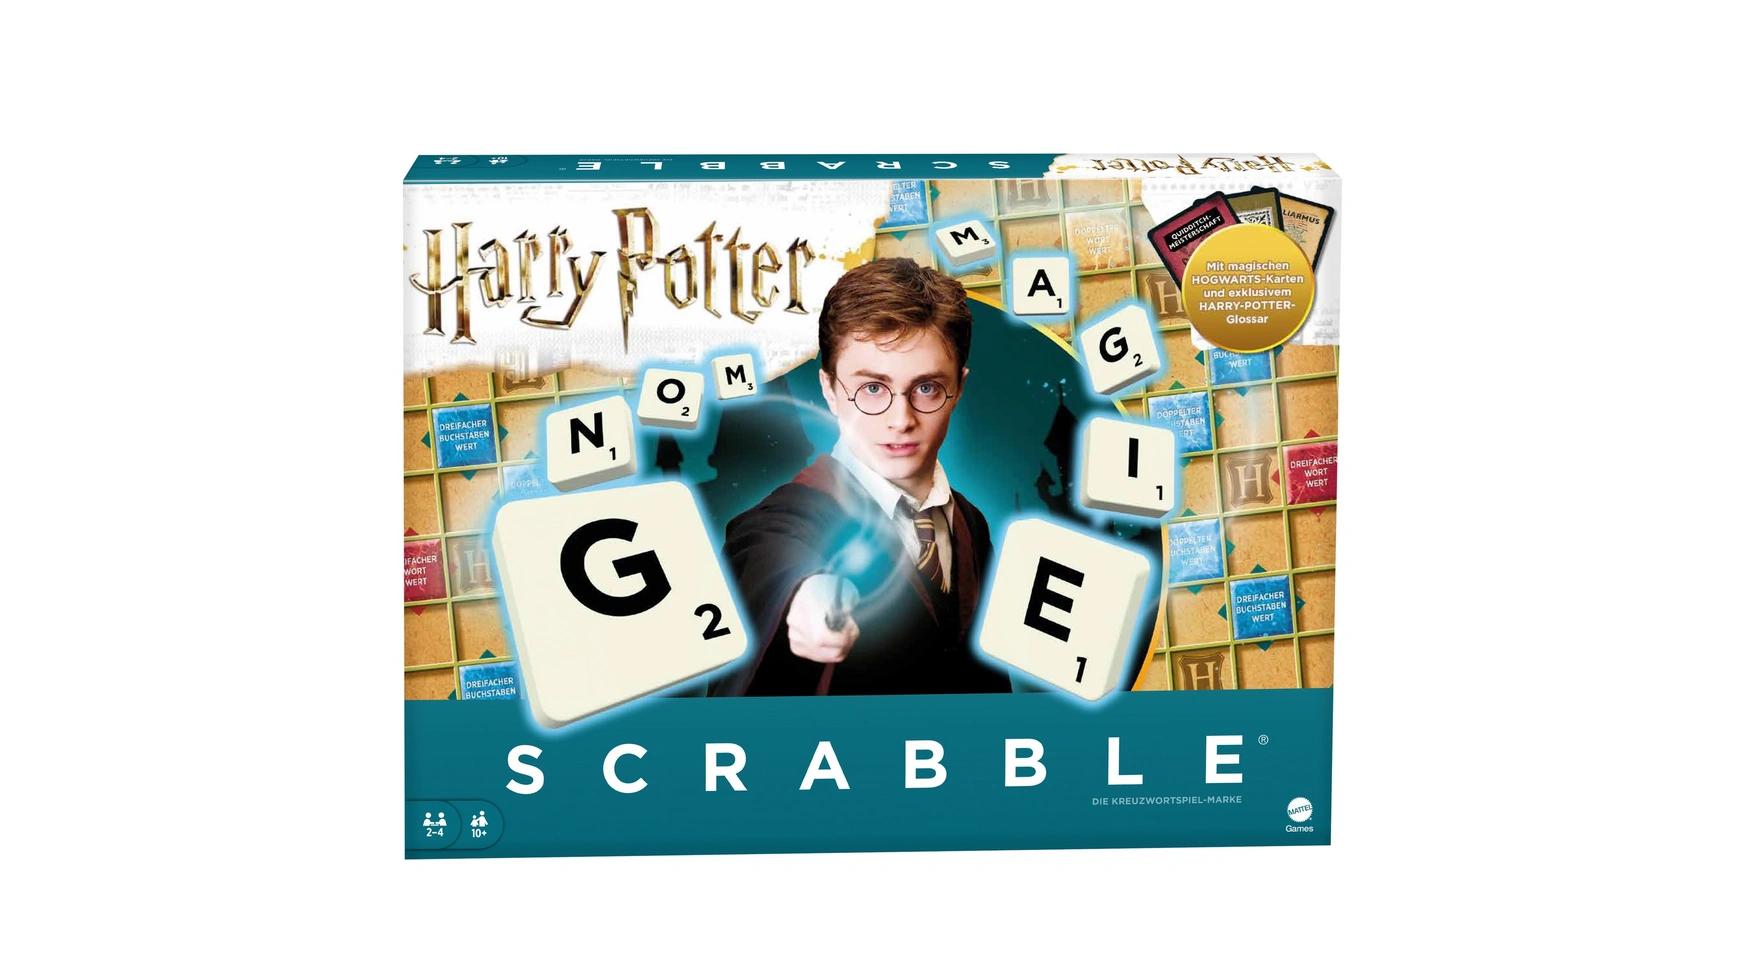 Mattel Games Scrabble Harry Potter, комнатная игра, настольная игра, семейная игра настольная игра игра престолов 2 е издание новая версия арт 1015 конструктор huggy wuggy 33 детали набор